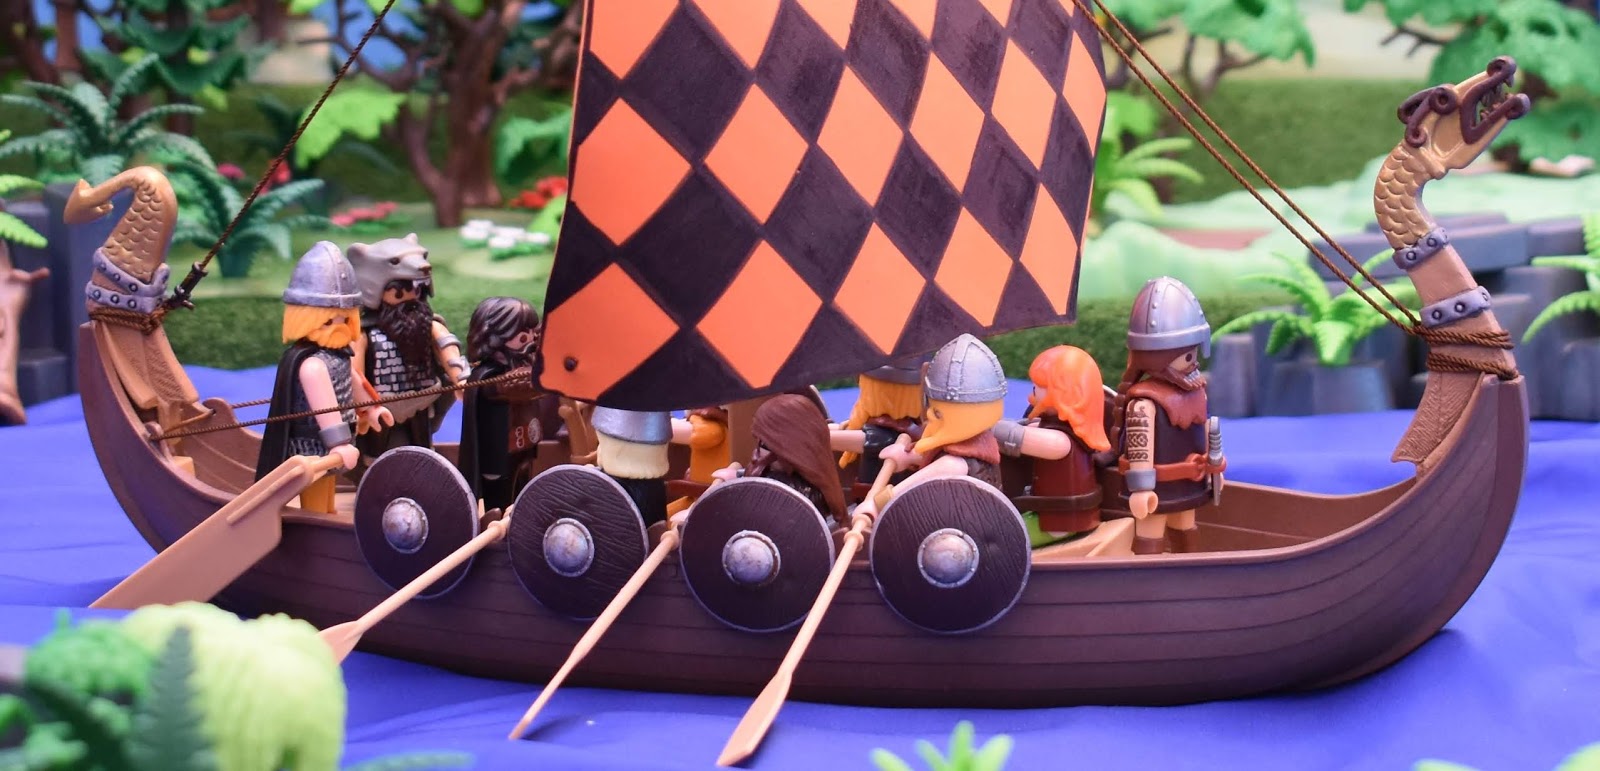 Playmobil Vikings Figures dioramas | Vikings, Playmobil, Diorama